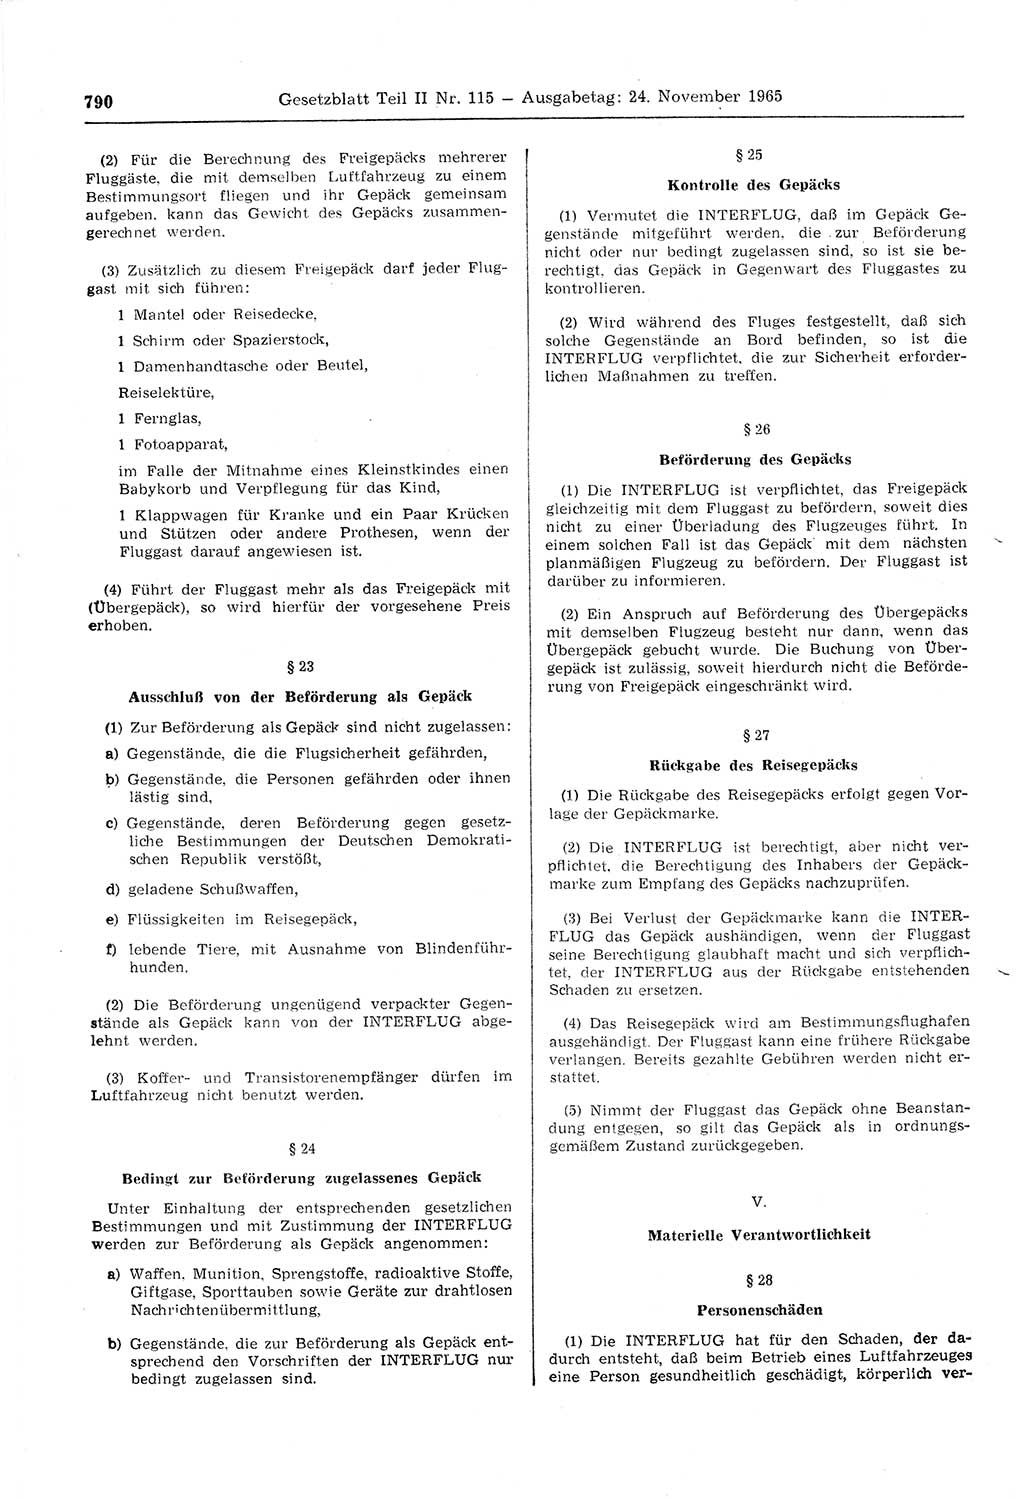 Gesetzblatt (GBl.) der Deutschen Demokratischen Republik (DDR) Teil ⅠⅠ 1965, Seite 790 (GBl. DDR ⅠⅠ 1965, S. 790)